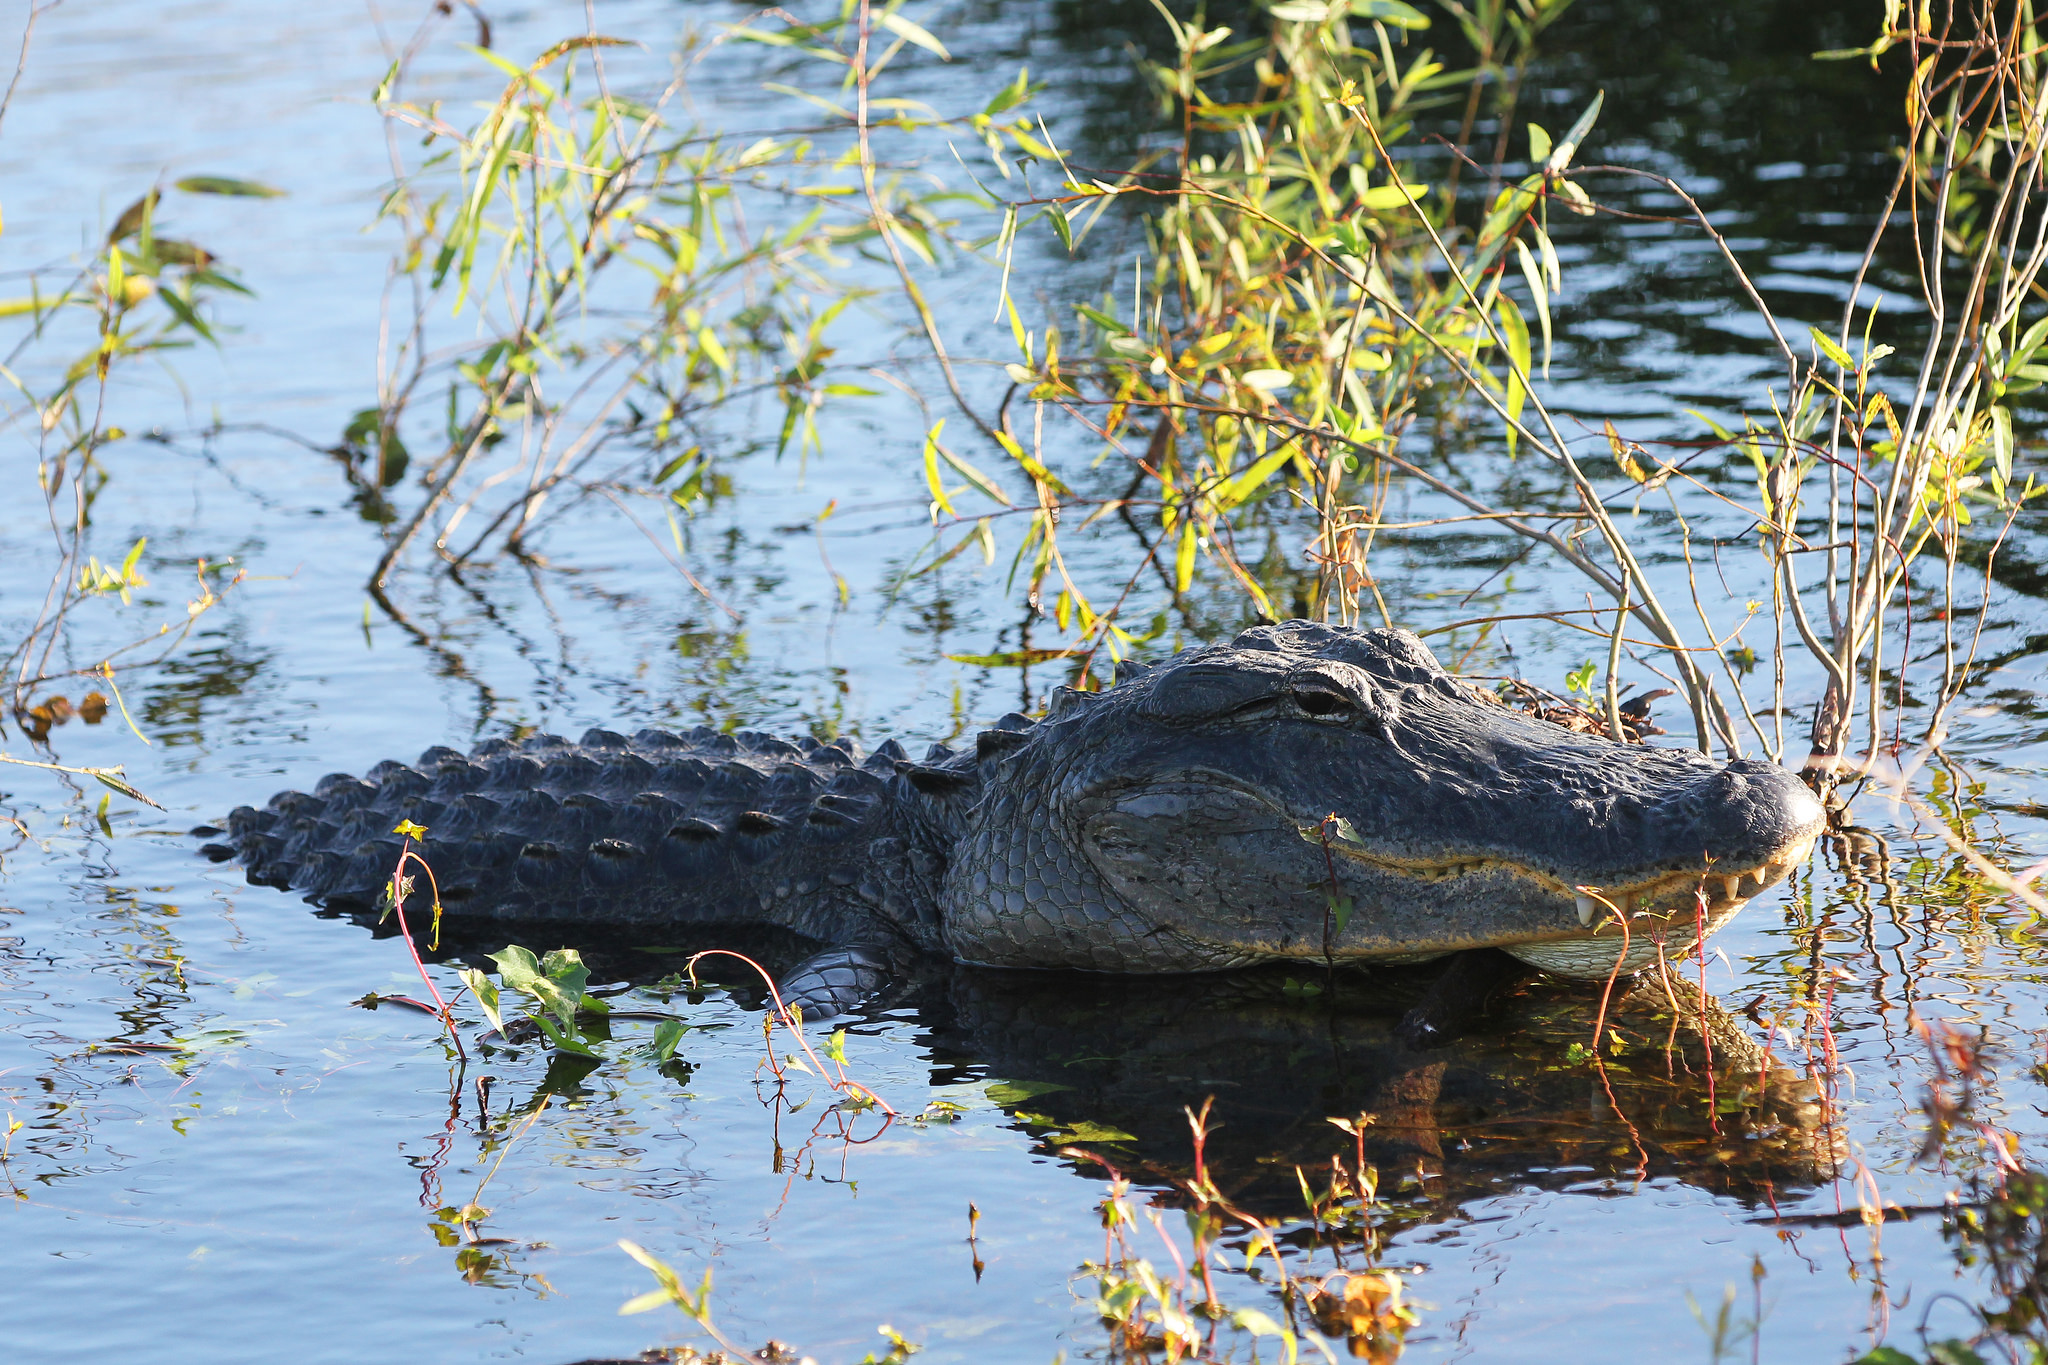 美国东南部的湿地环境生活着鳄形类中的两大顶级掠食动物,当地人将